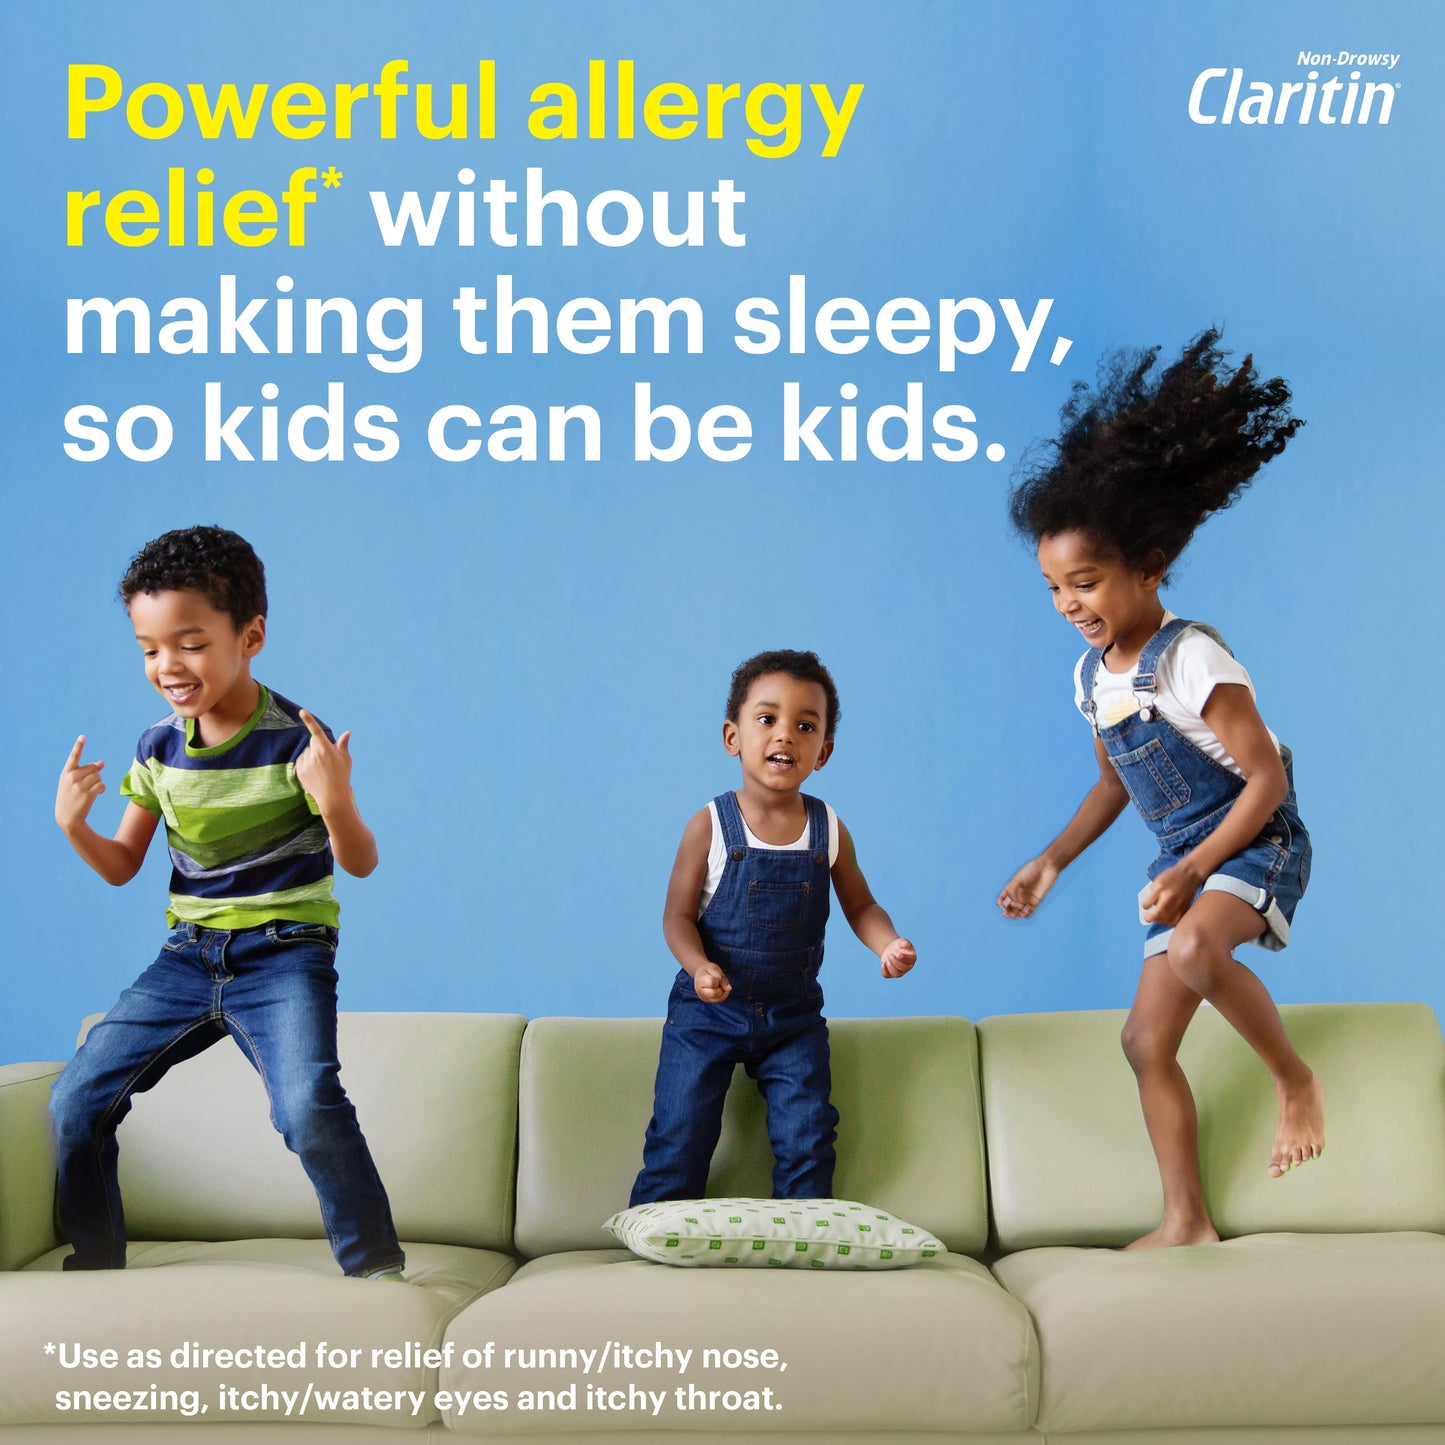 Claritin Non-Drowsy Allergy Medicine for Kids, Loratadine Antihistamine Grape Syrup, 8 fl oz